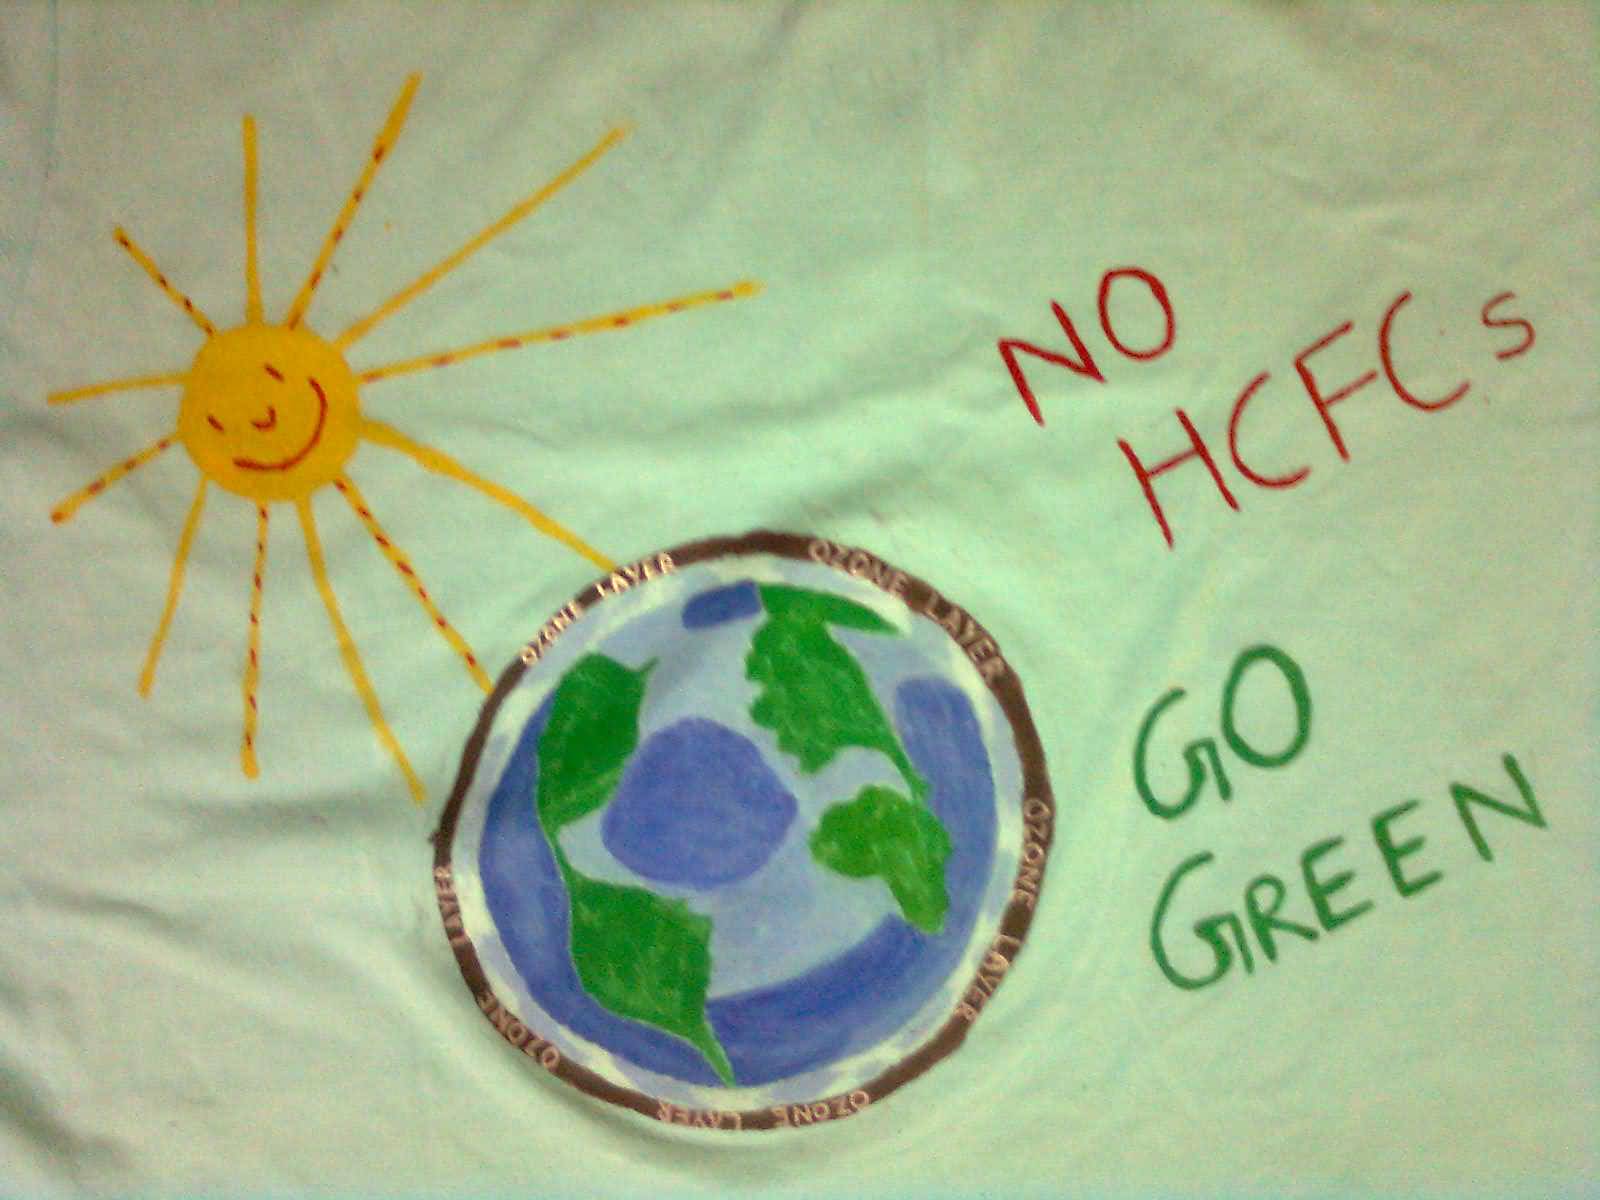 No HCFC's Go Green World Ozone Day